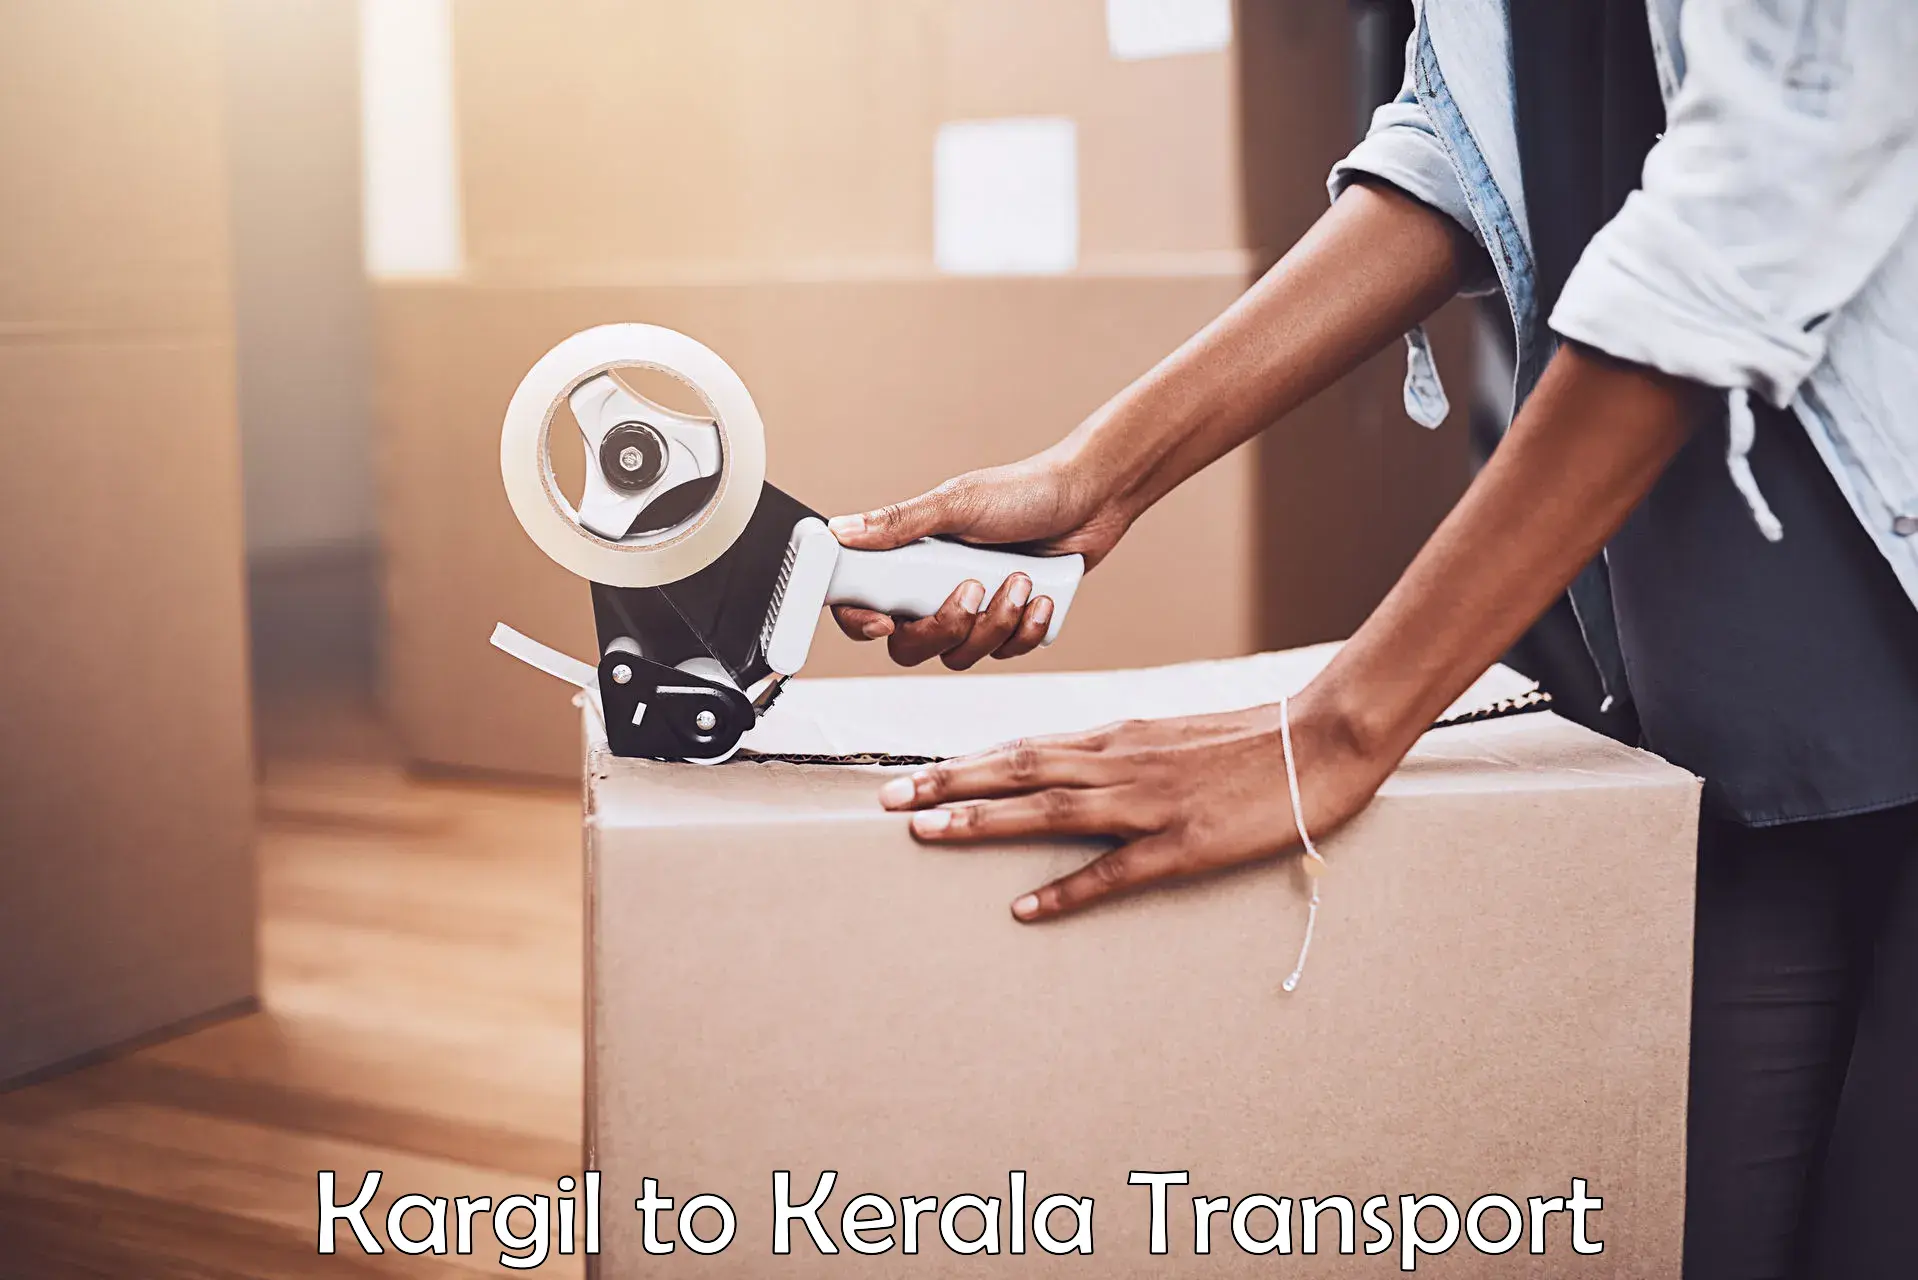 Shipping partner Kargil to Kerala